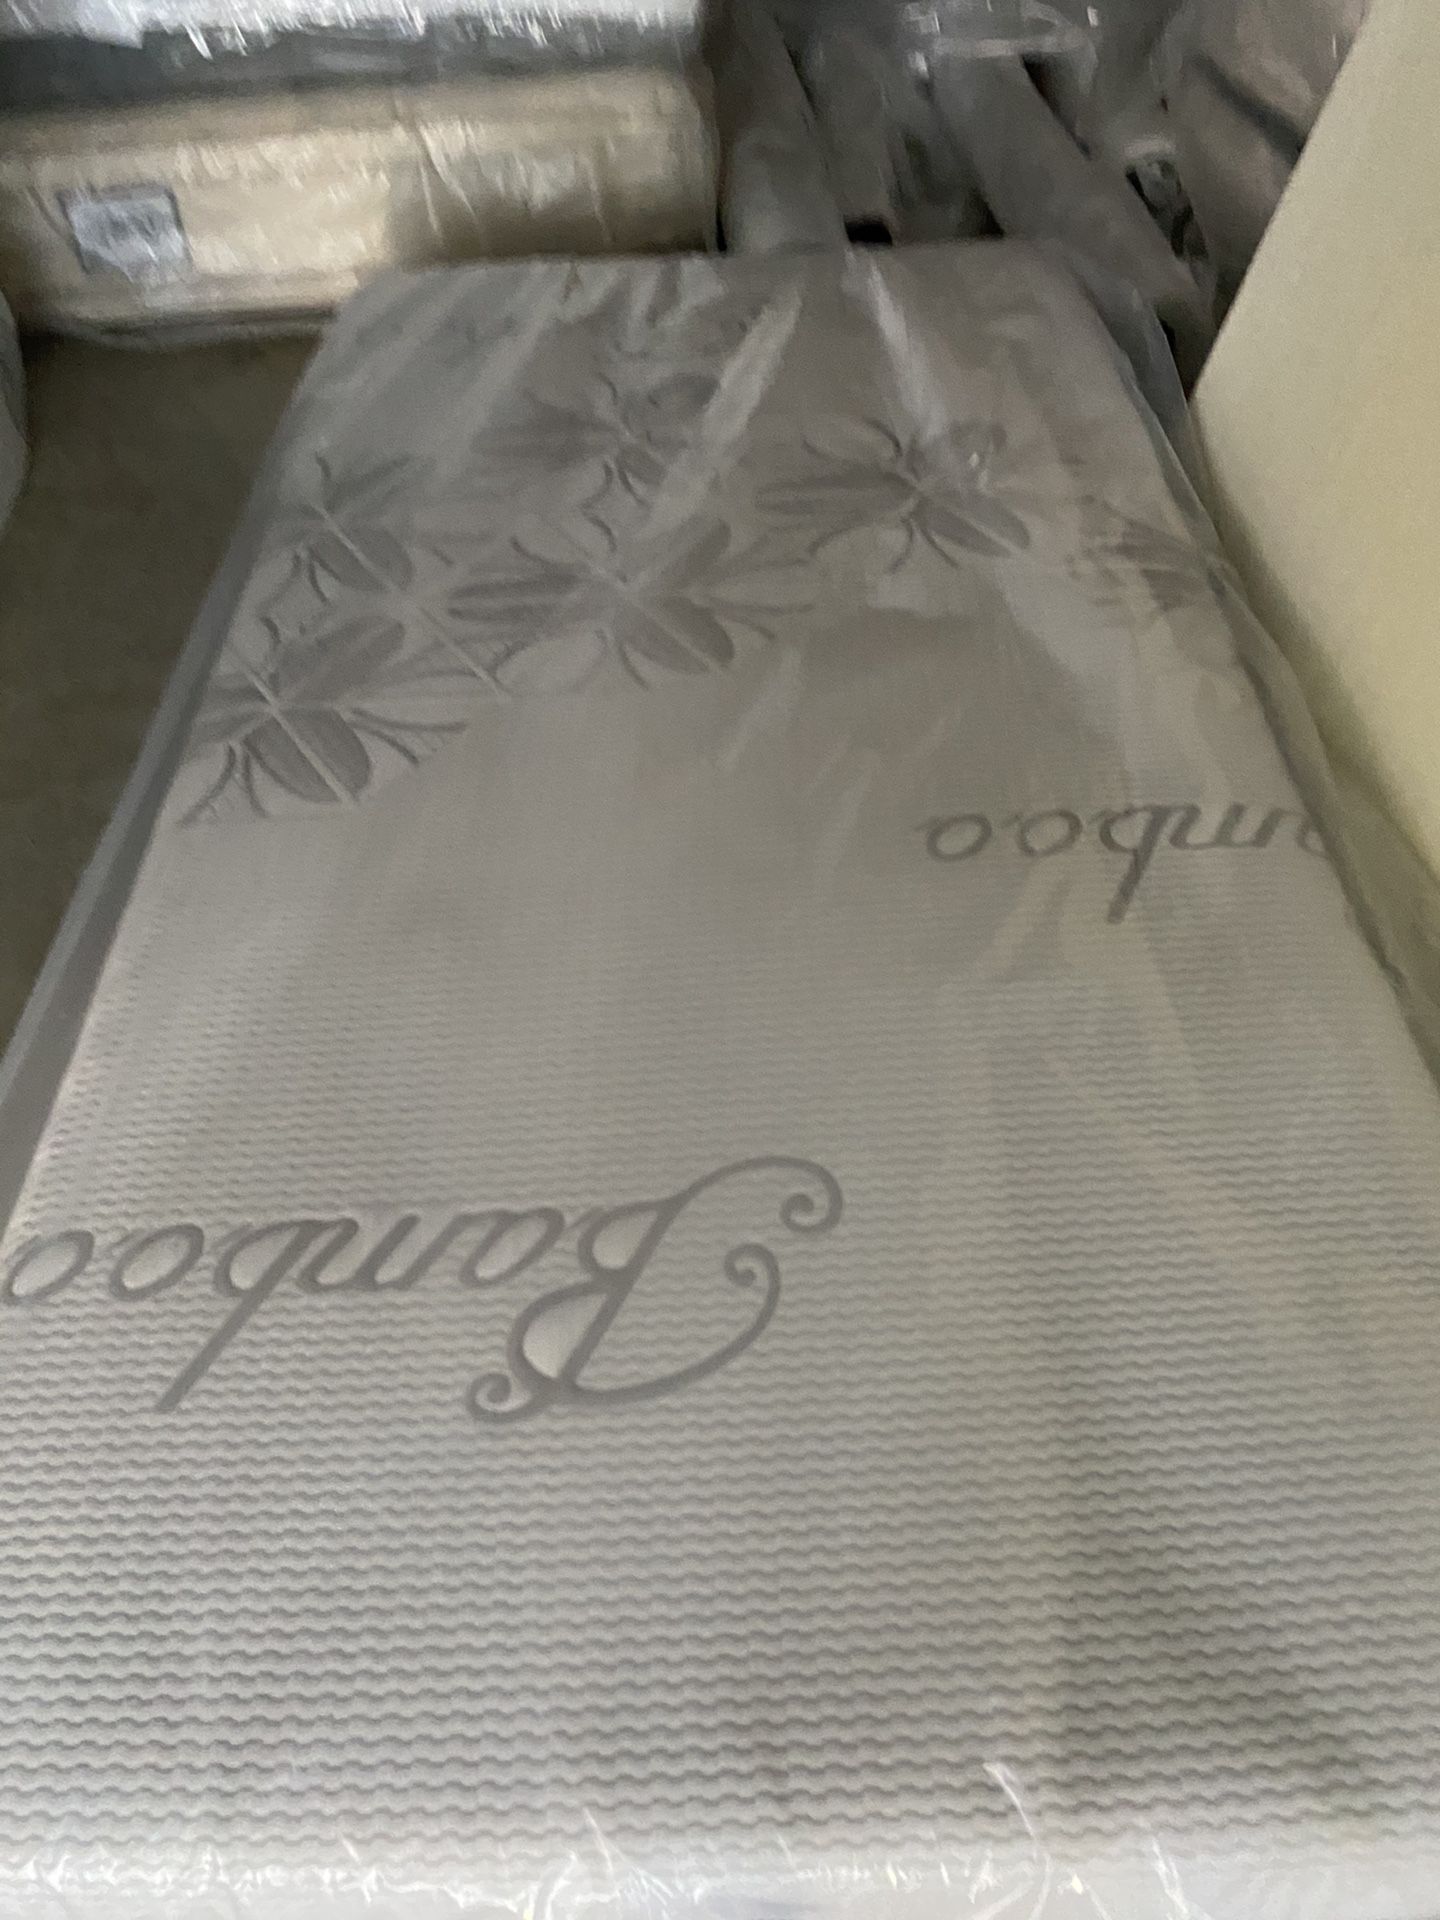 New twin size mattress